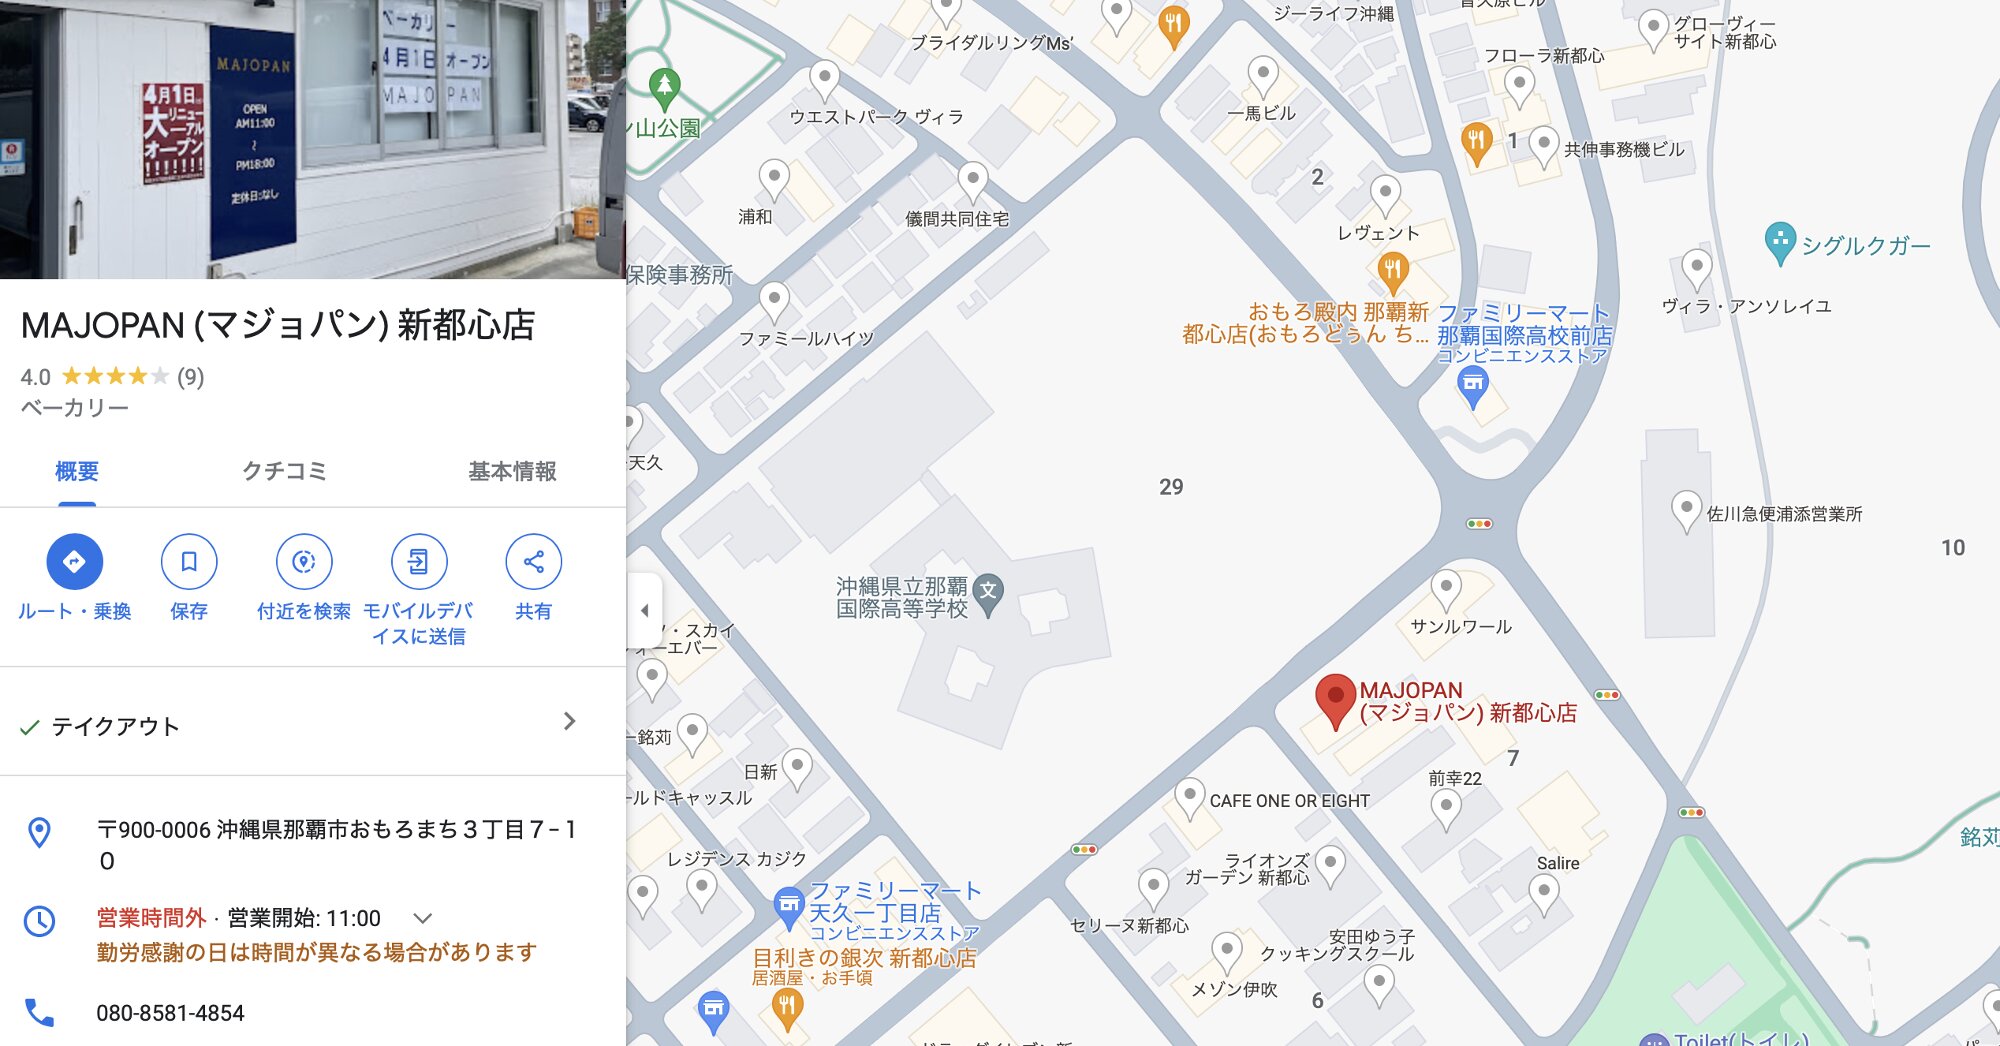 Googleマップより引用（MAJOPAN (マジョパン) 新都心店）